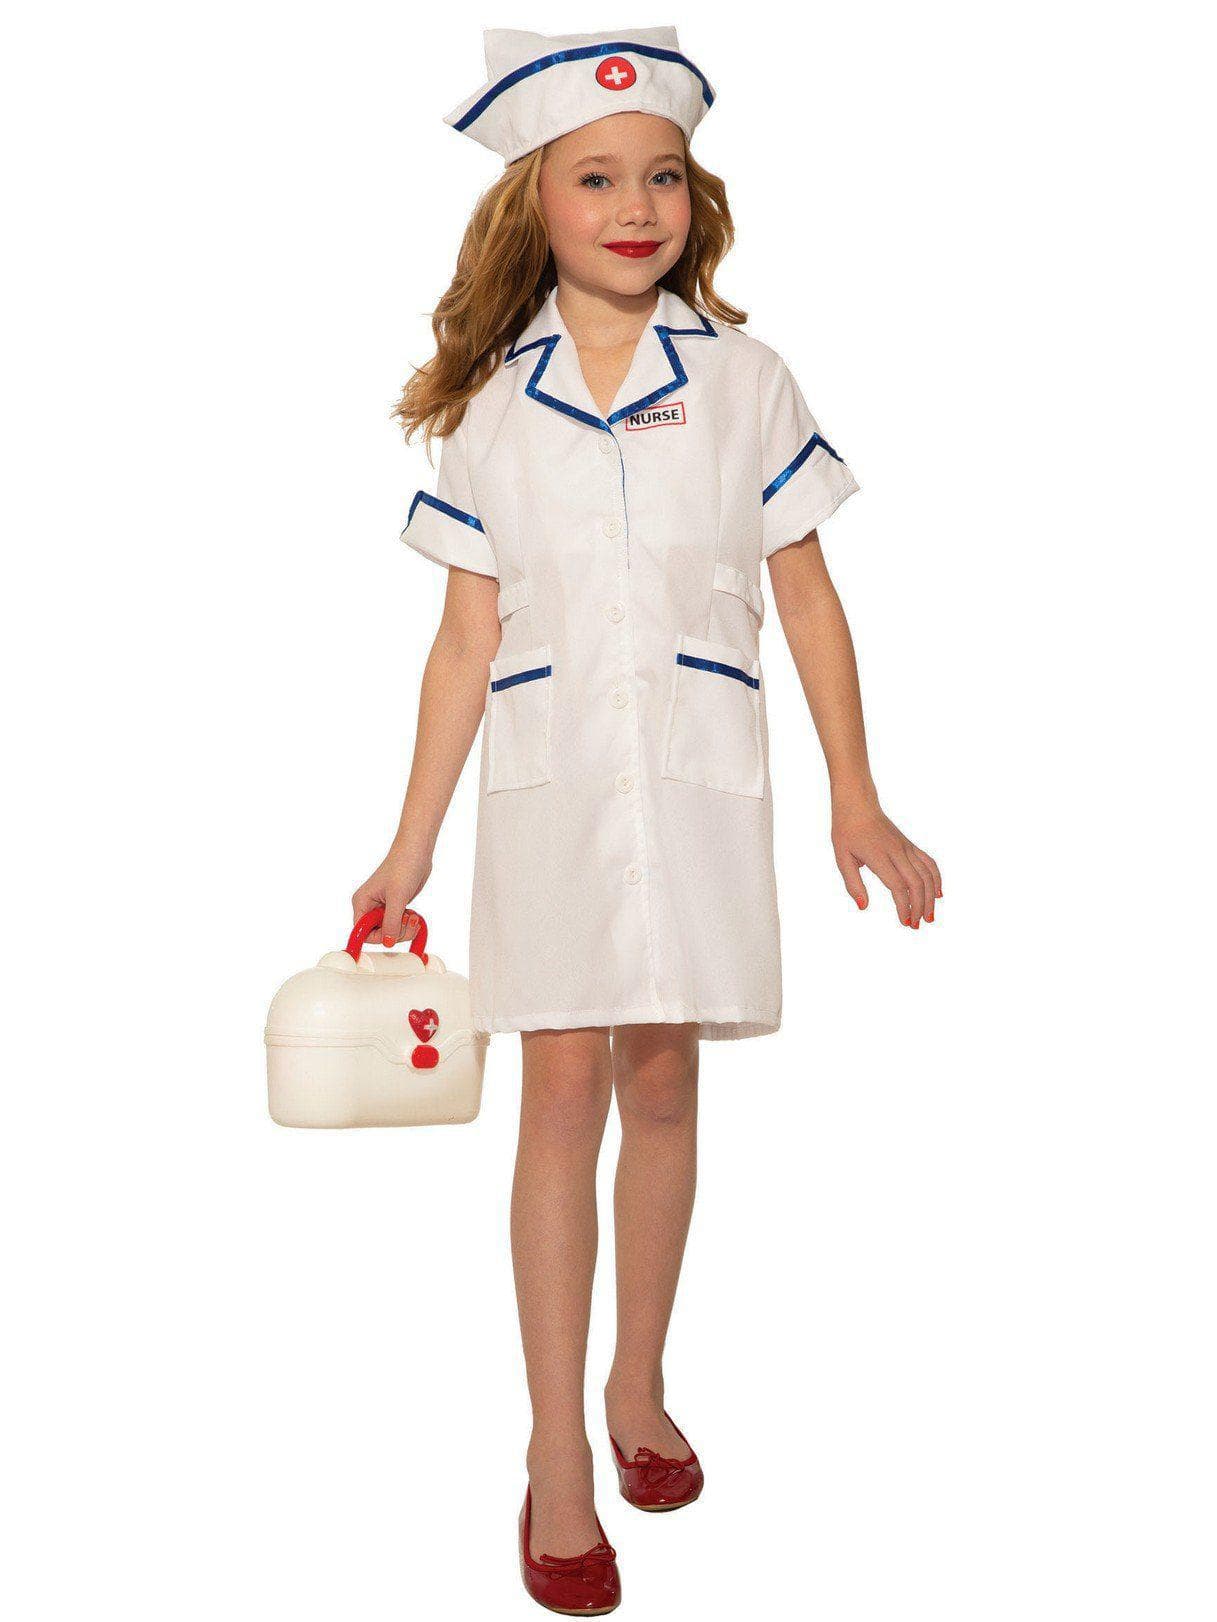 Kid's Nurse Costume - costumes.com